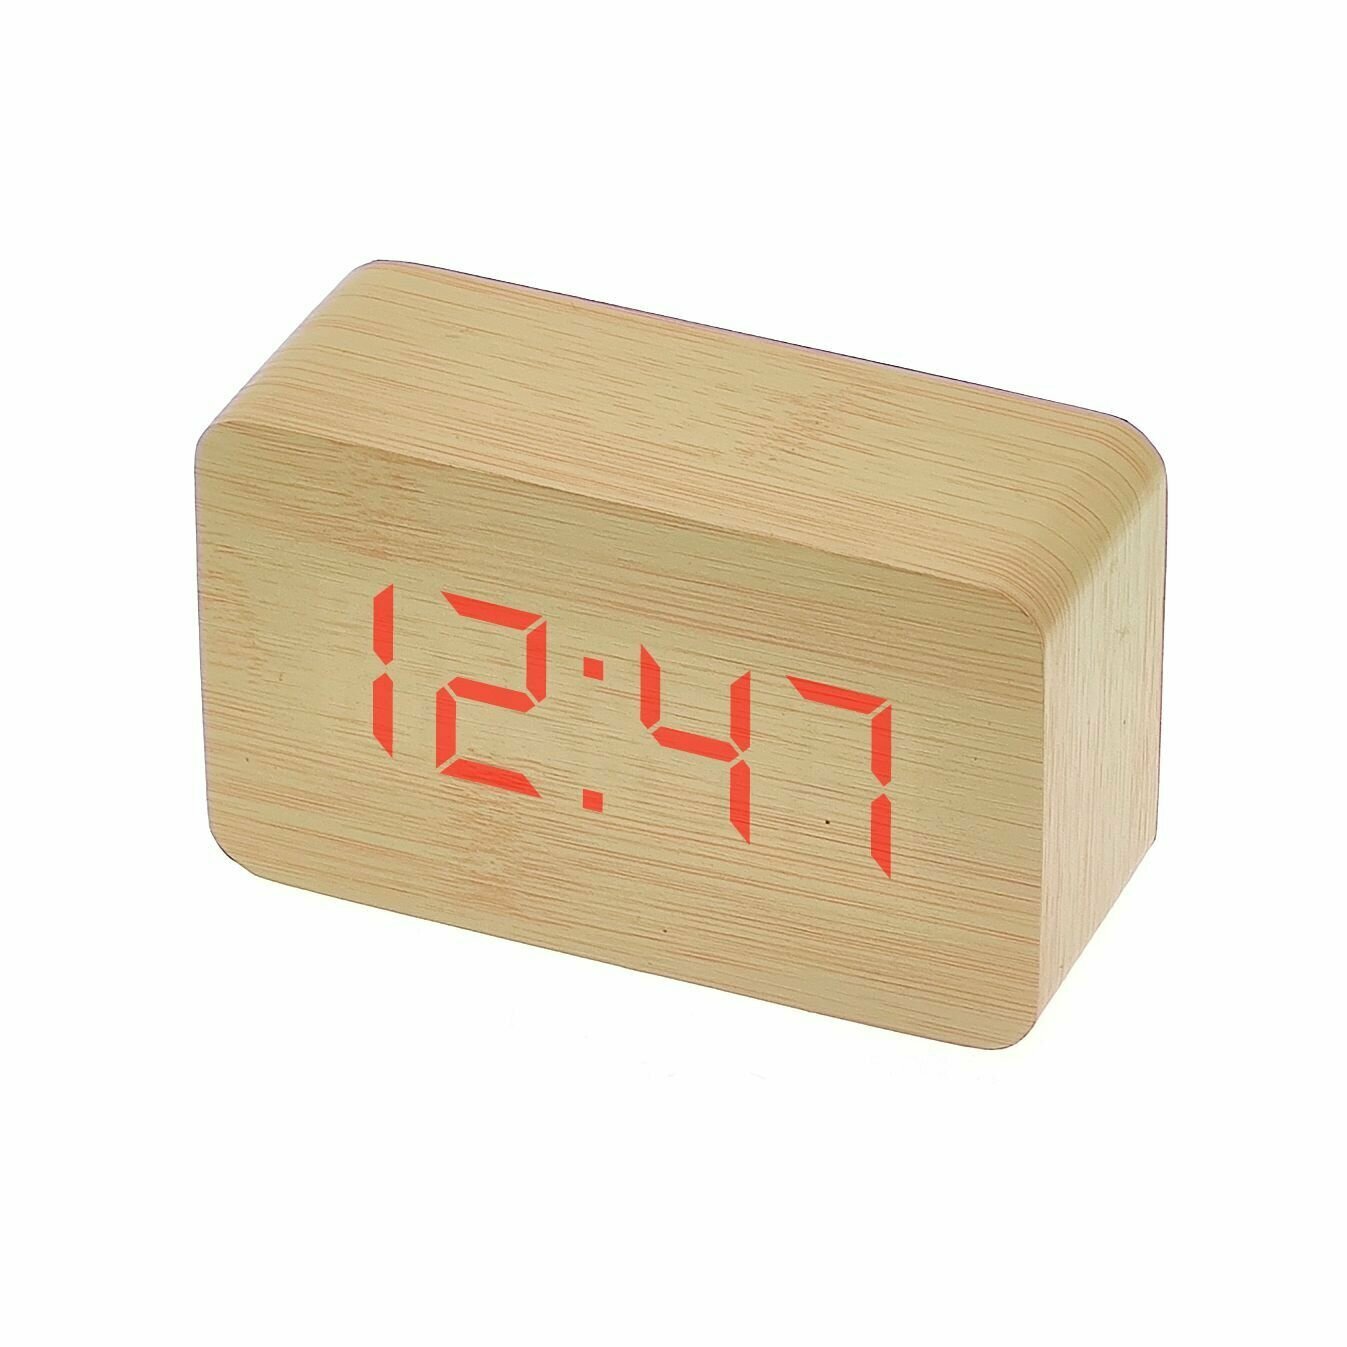 Часы настольные (светло-коричневый)(без блока) VST 863-1 Красные